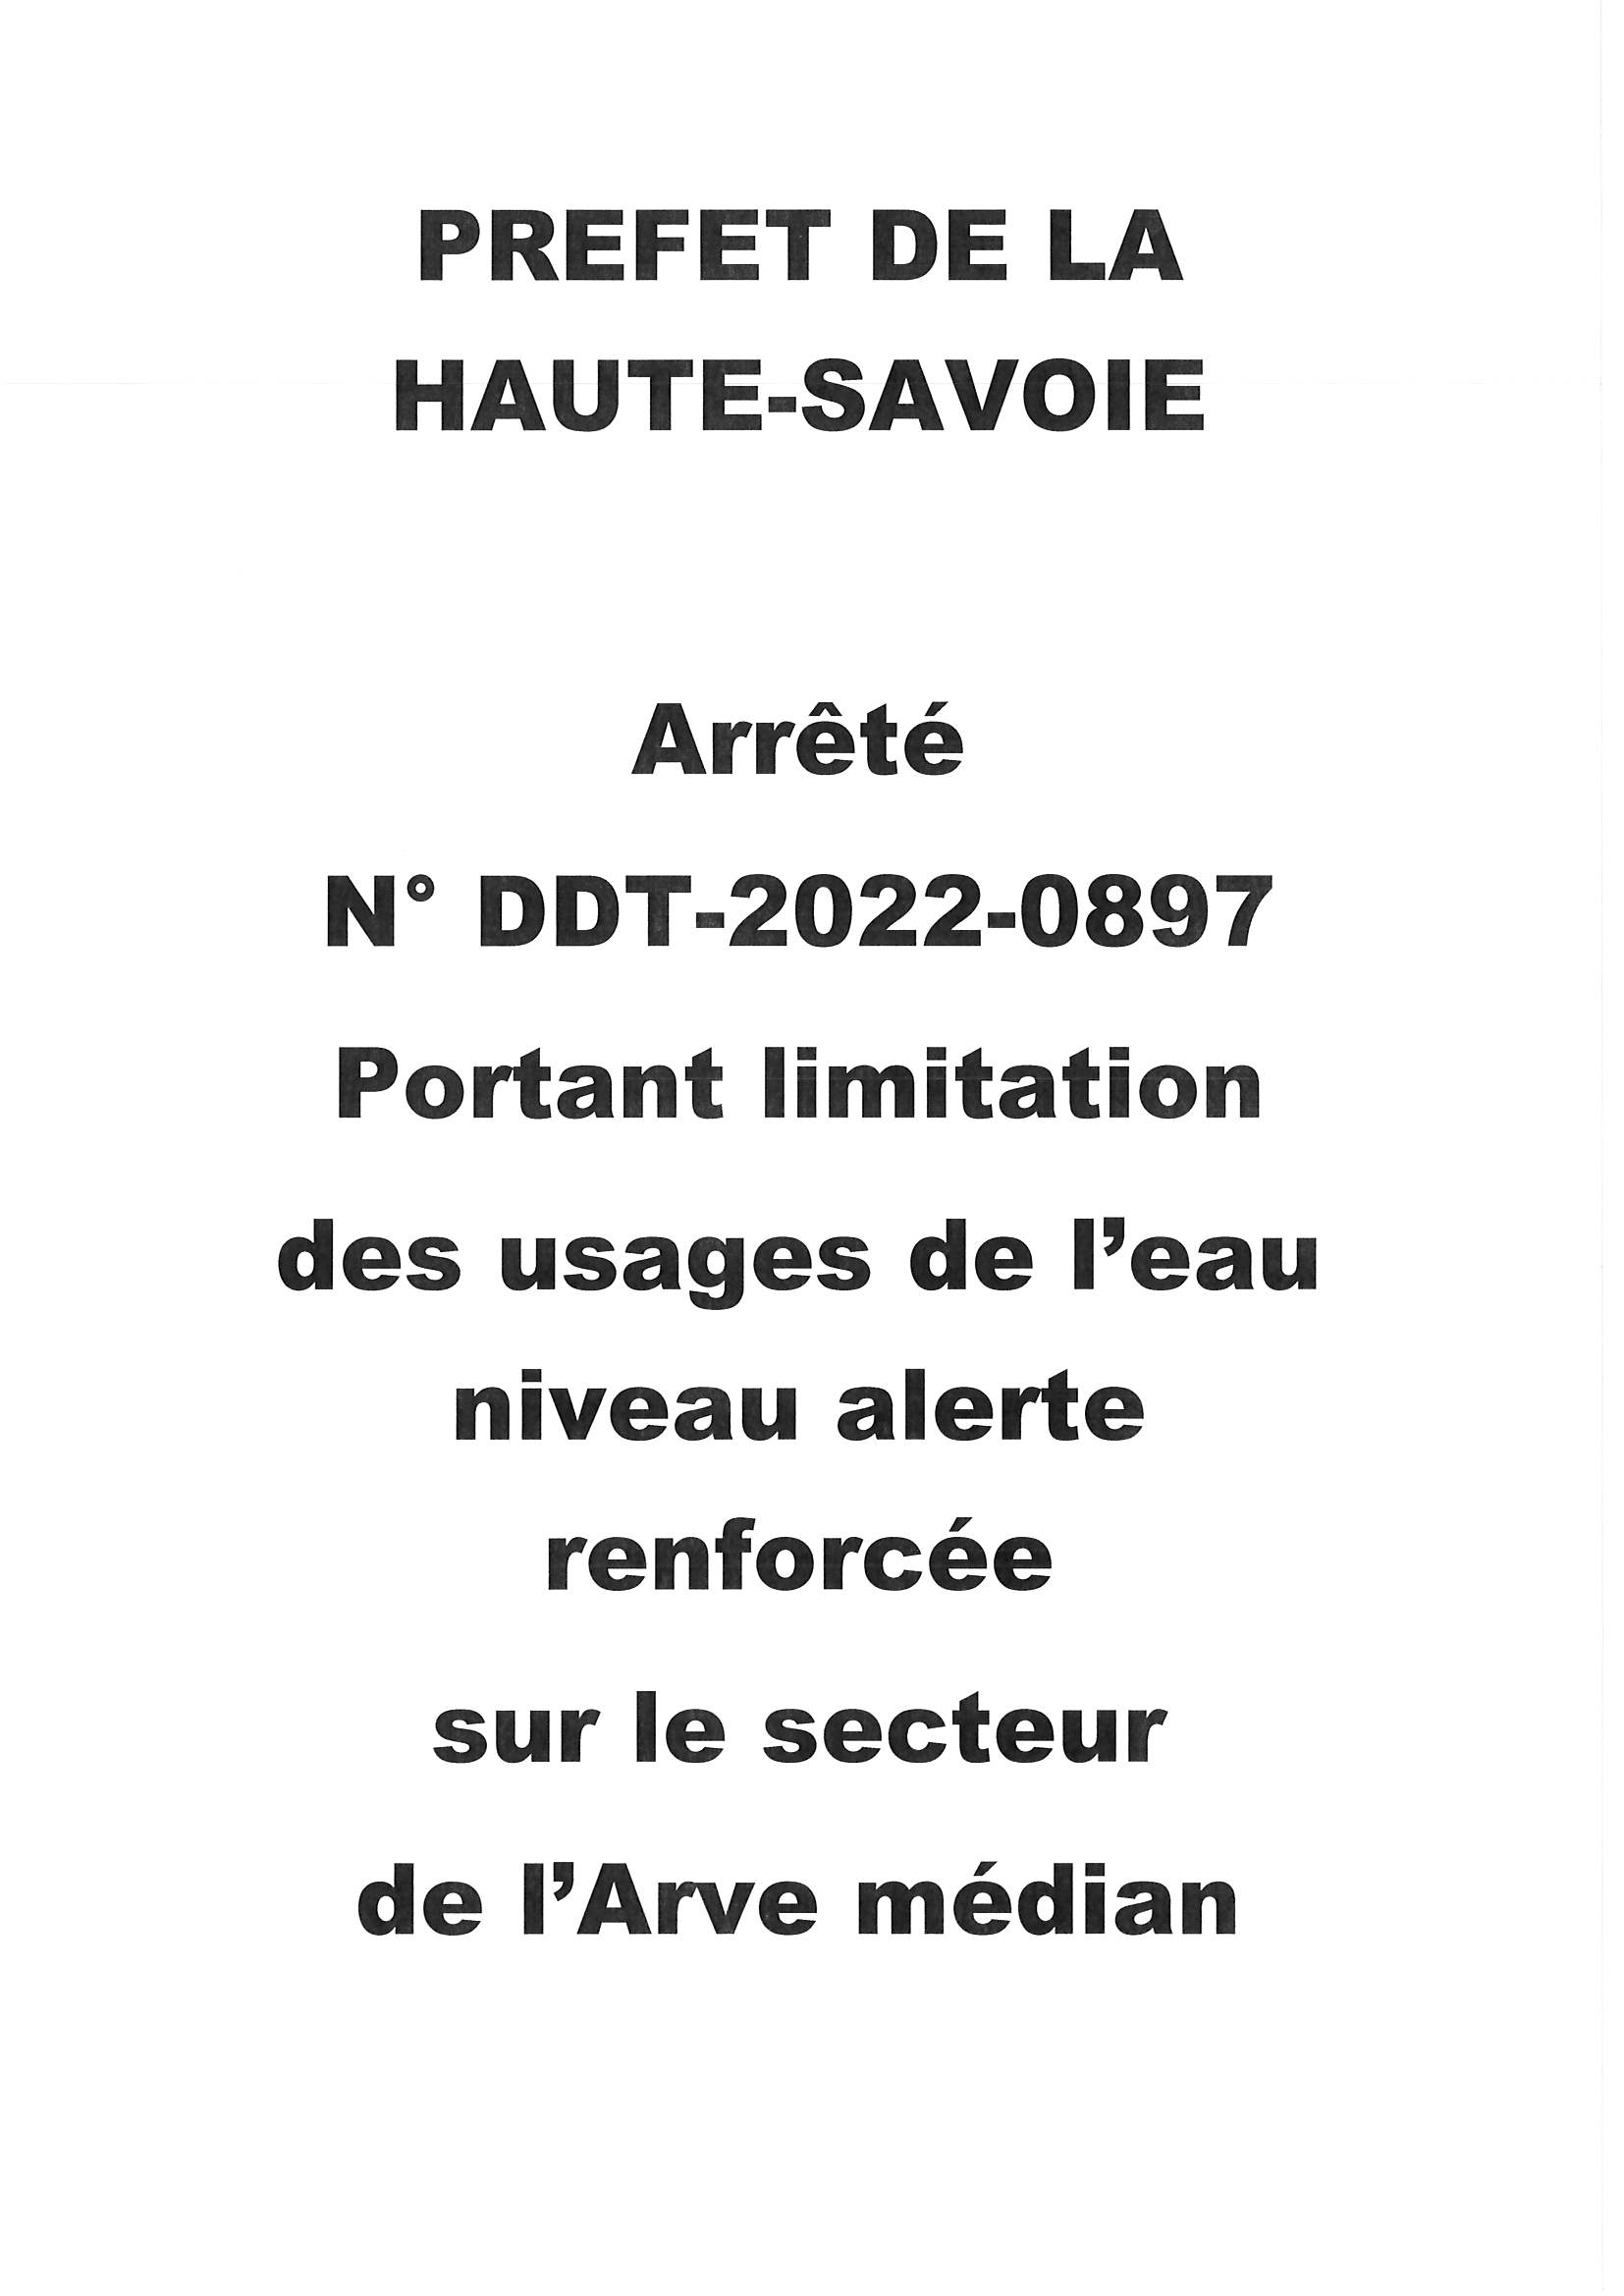 Arrete Prefet limitation usage eau DDT 2022 0897